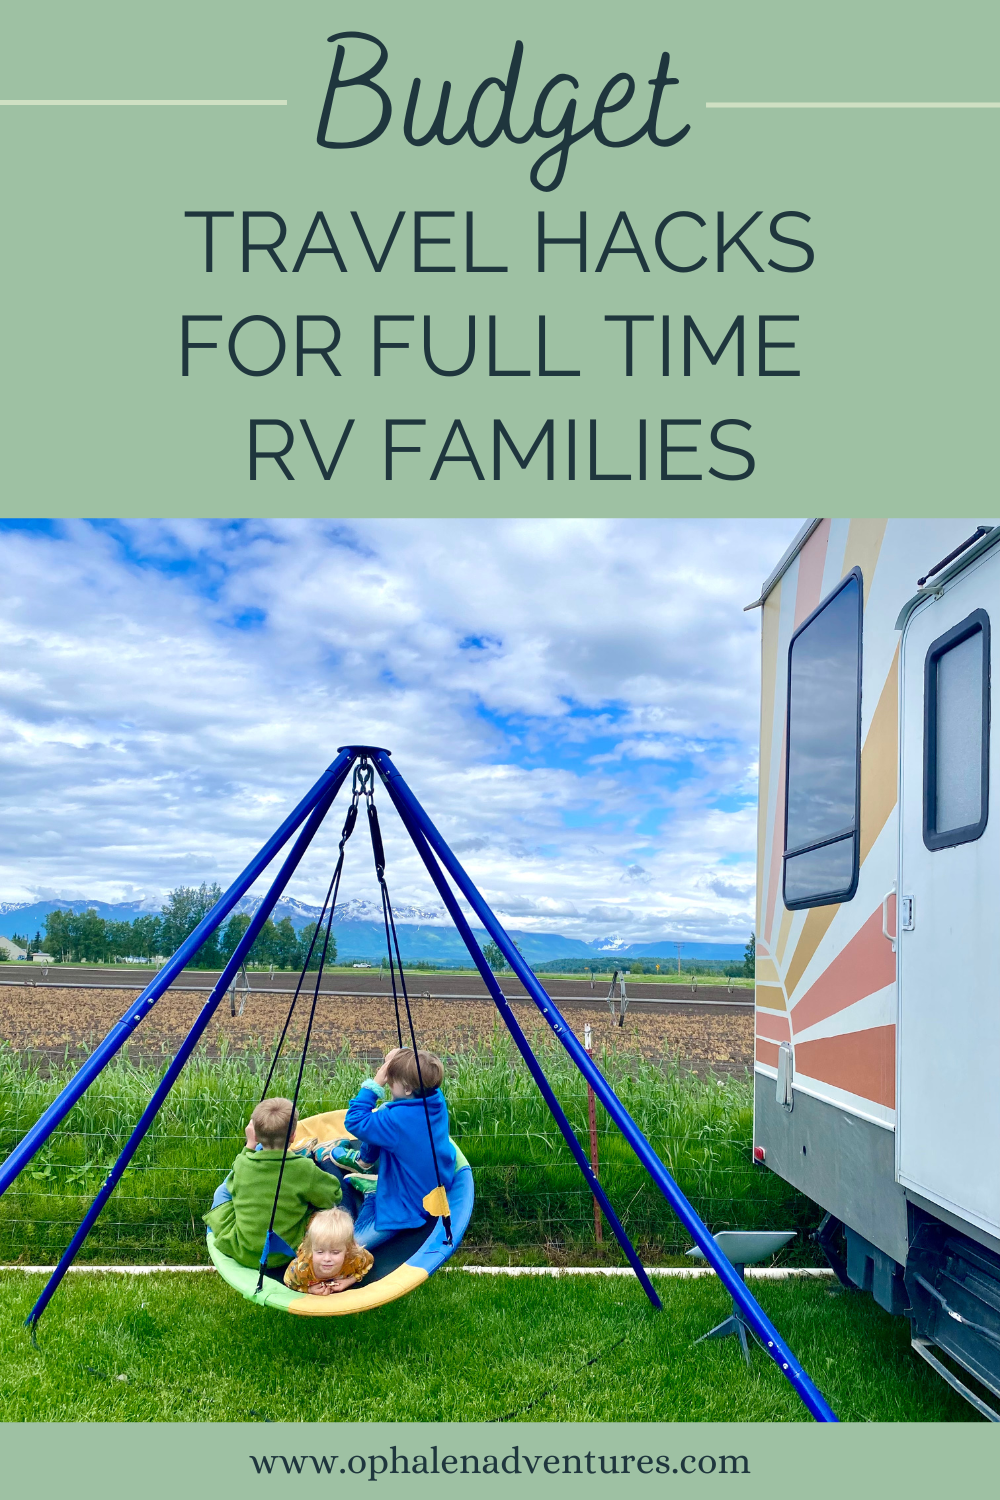 Full Time RV Families, kids outside of RV on swing | O'Phalen Adventures